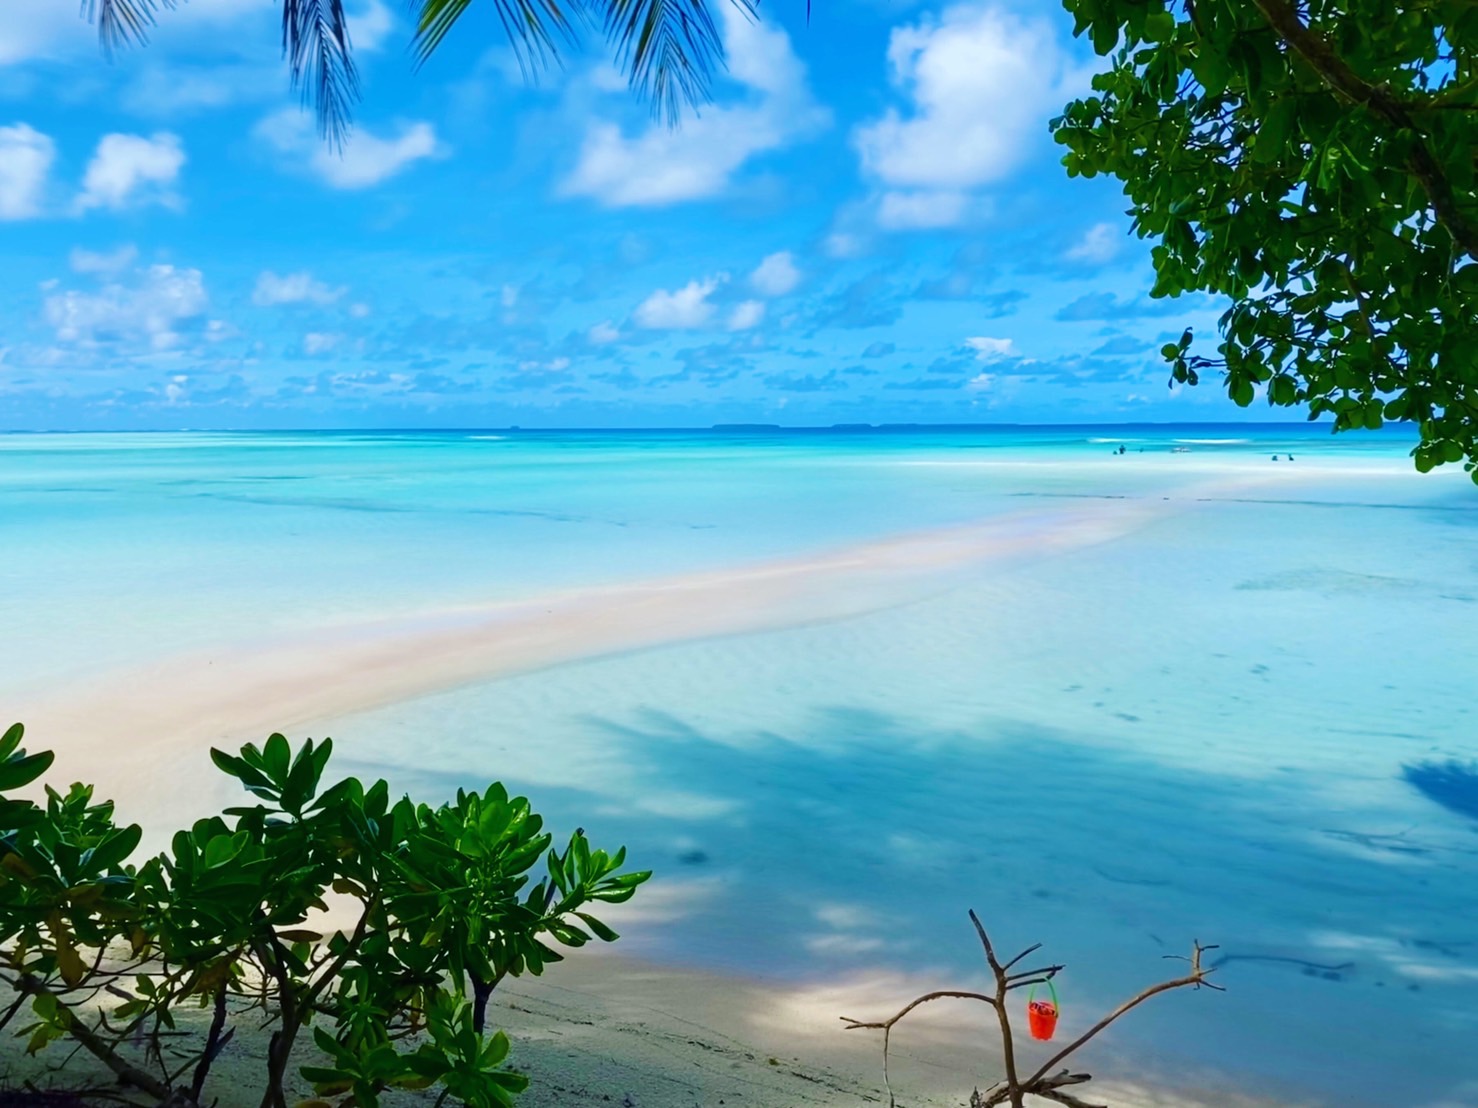 تويتر ミクロネシア連邦チューク州政府観光局日本事務所 على تويتر Happy Friday １週間 お疲れ様でした 今日は白い砂と青い海が美しいpisar島の写真をお届けします チューク語でpisarは 動く砂 という意味で ピクニックで人気な美しい島です 海の色に